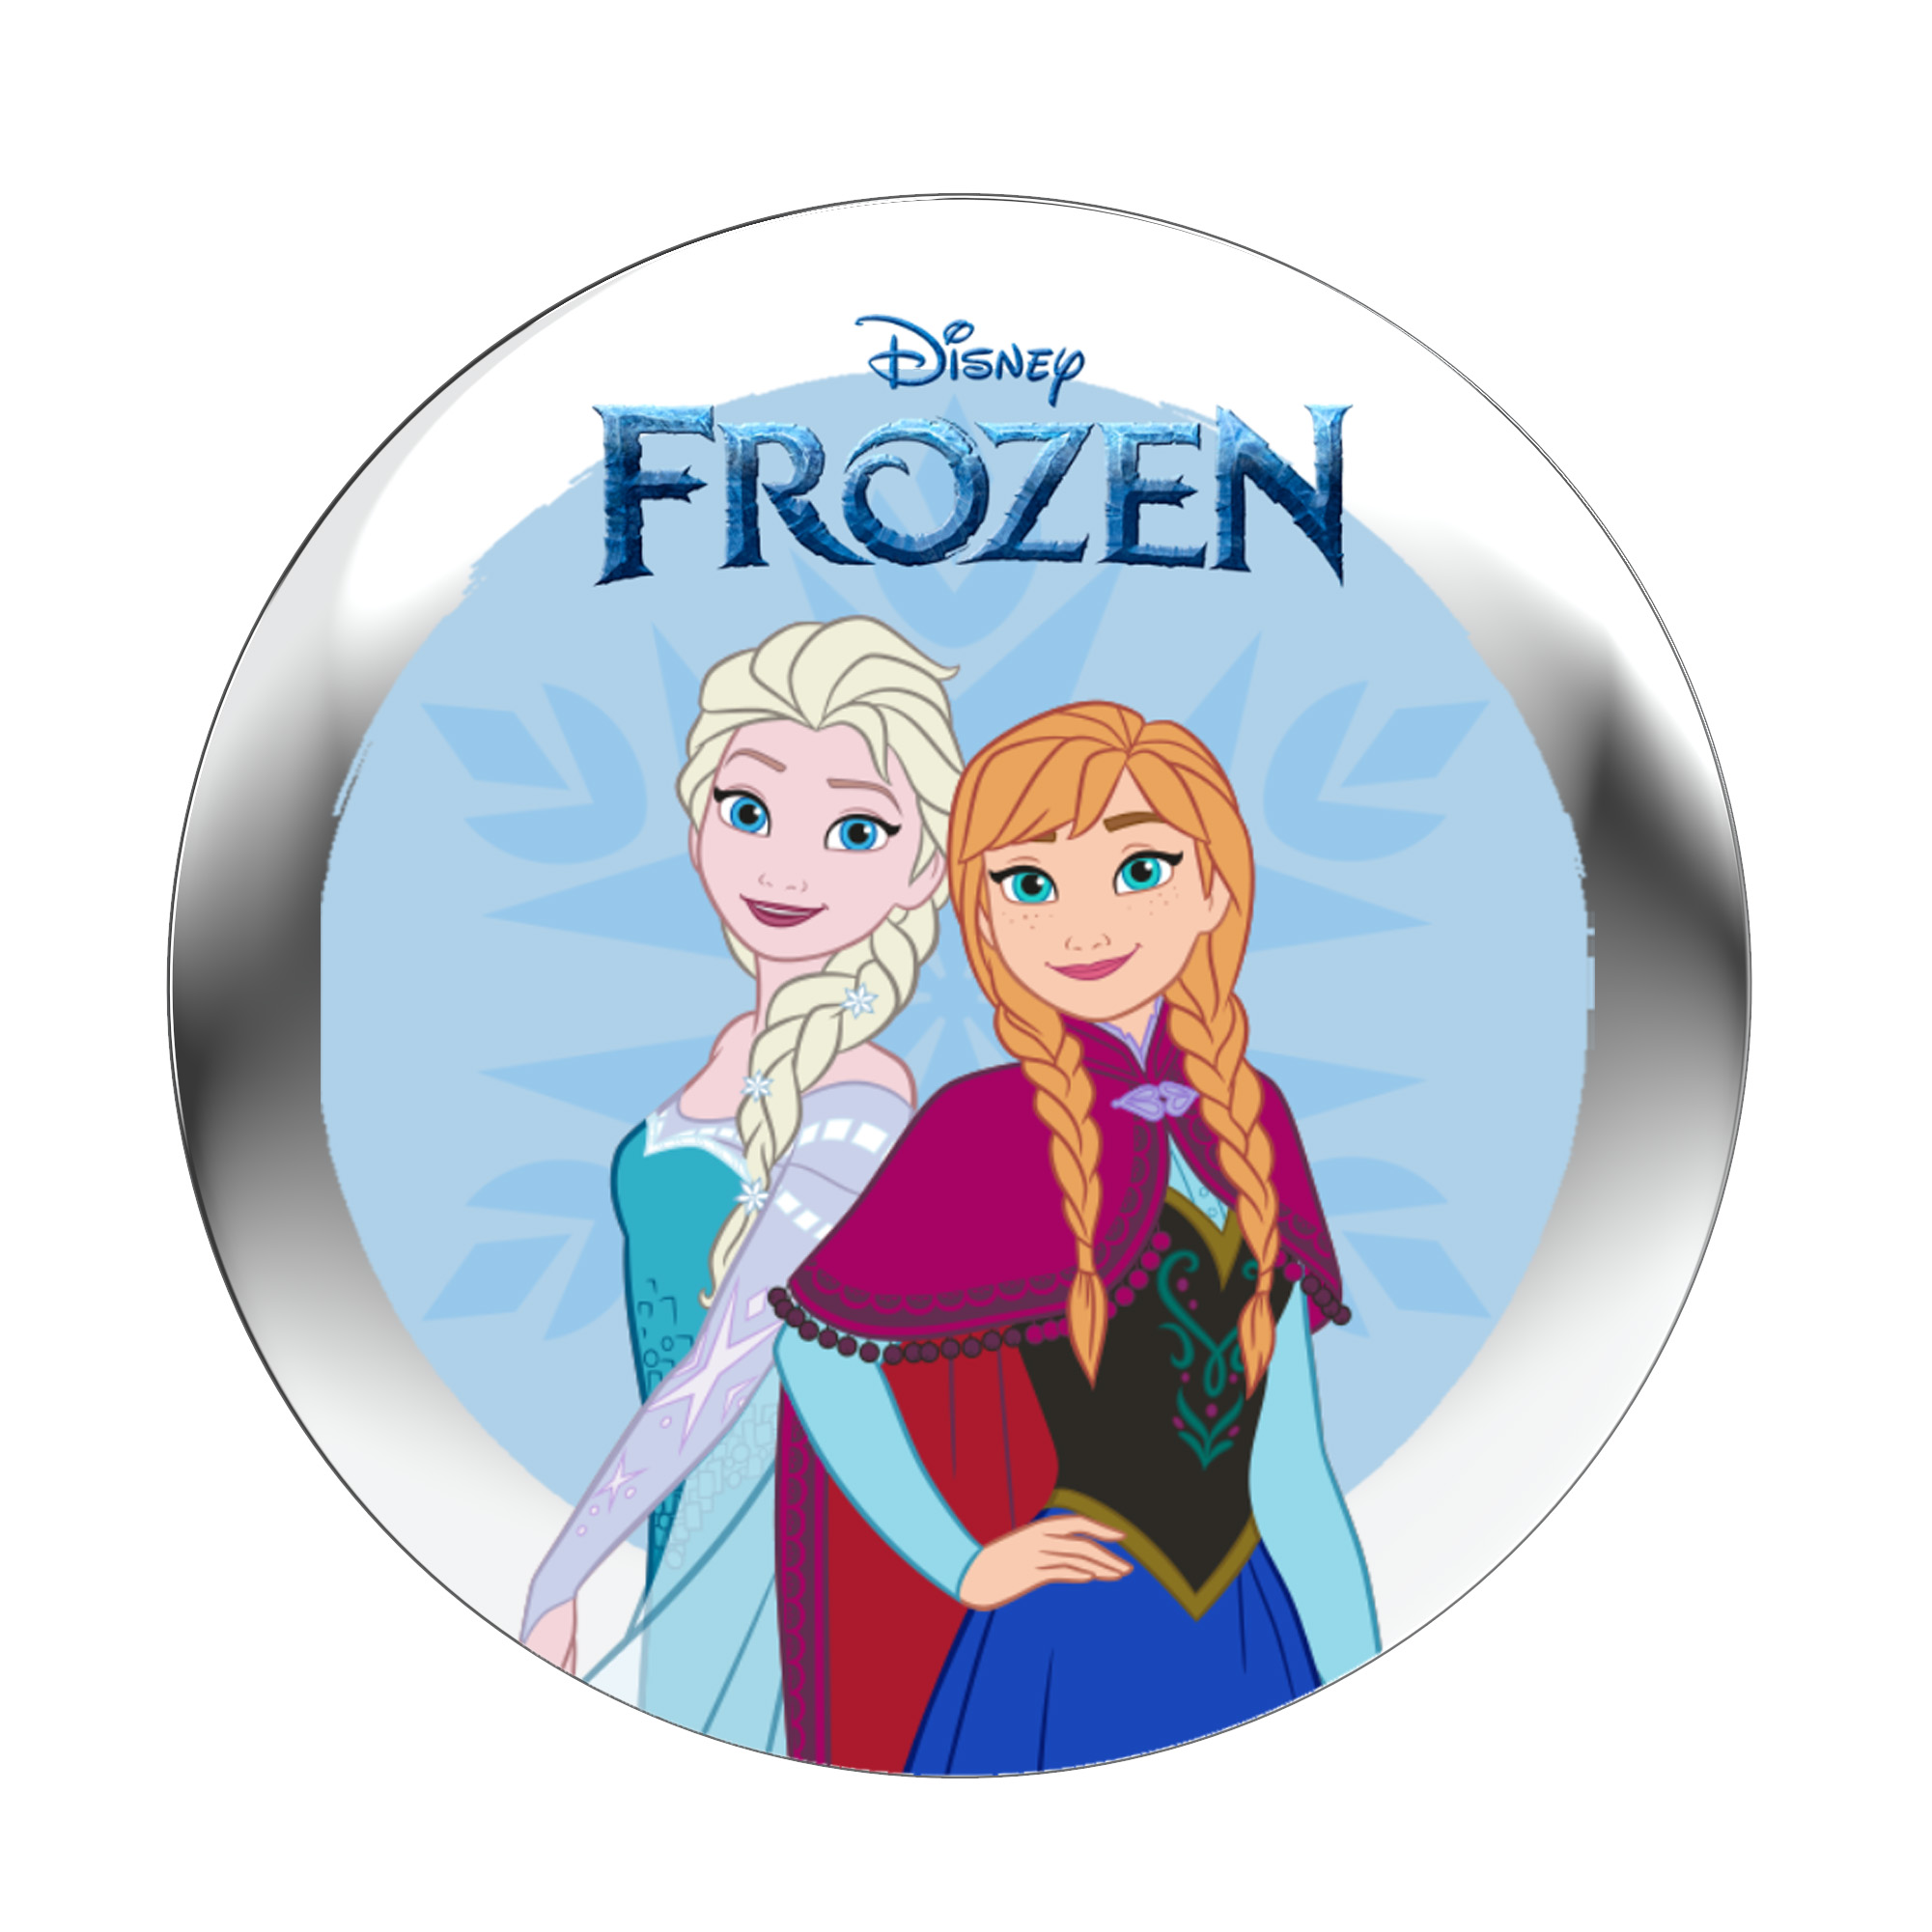 StoryPhones - Audio (Download - \'Frozen\' StoryShield Track) Audiogeschichte für - Disney -